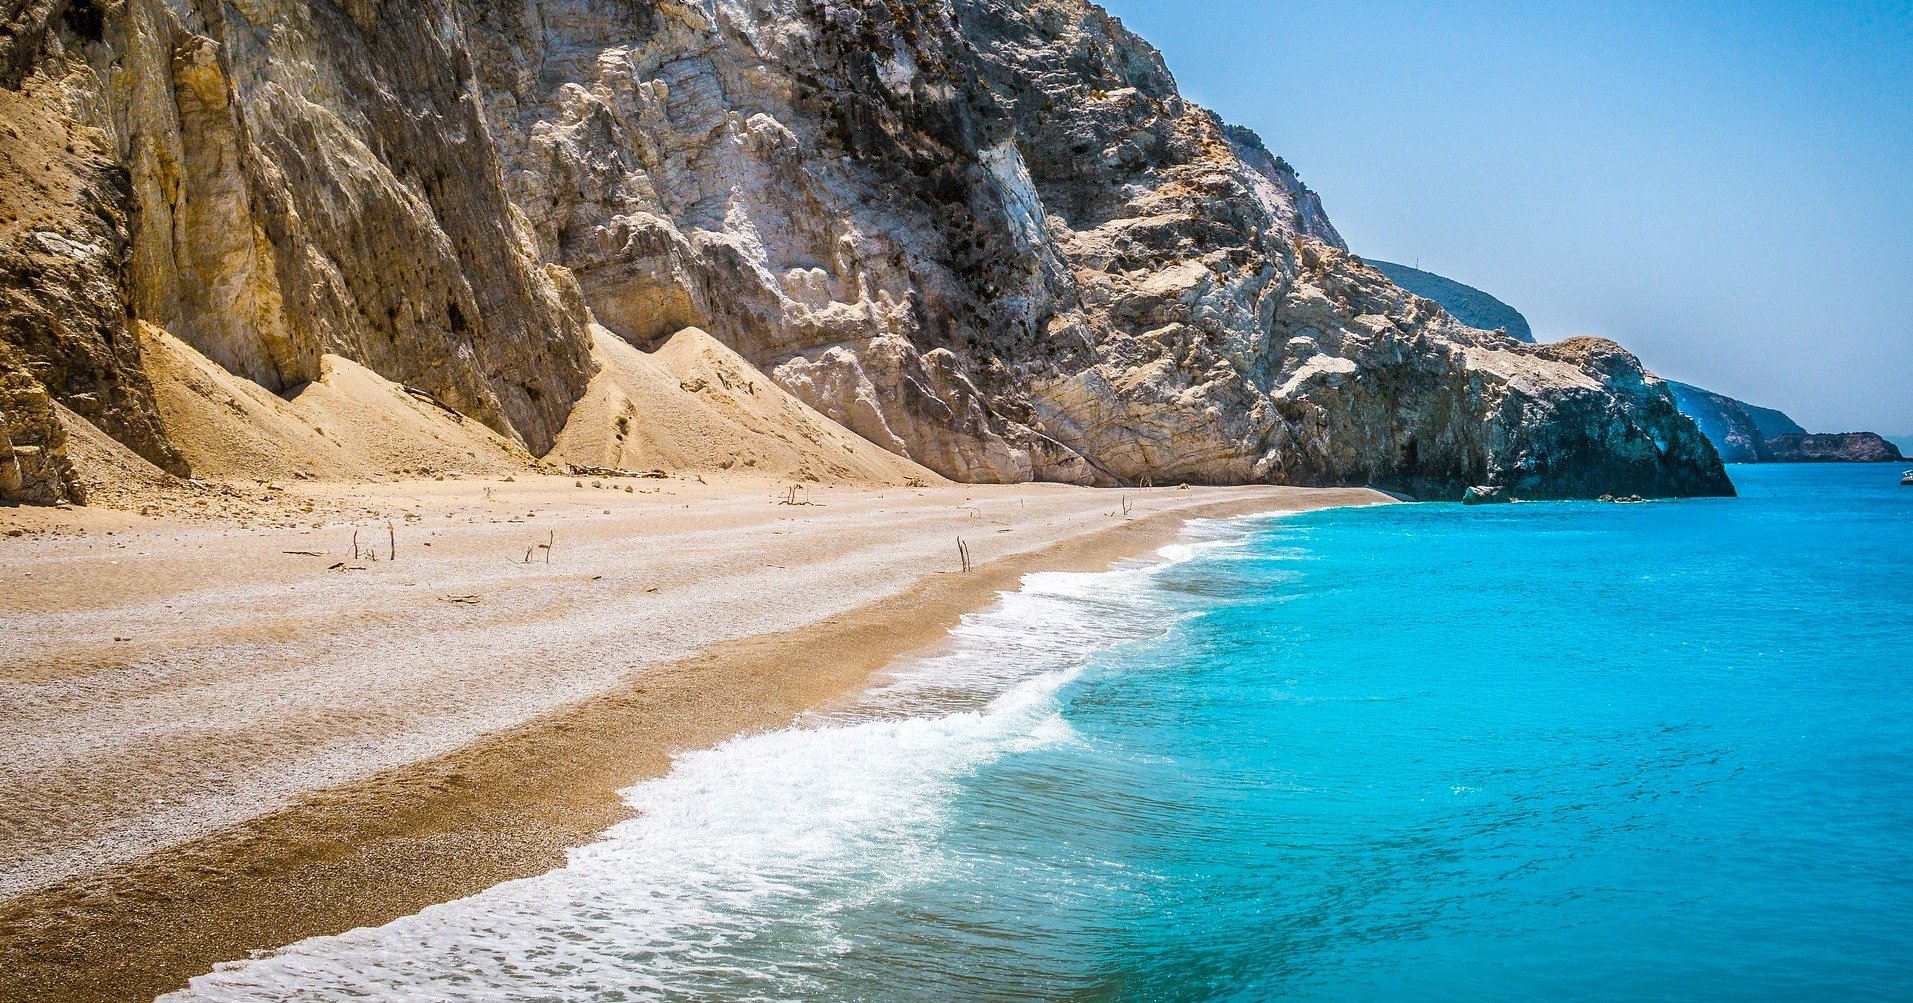 Εγκρεμνοί: Η ωραιότερη παραλία της Ελλάδας ξανά προσβάσιμη μετά από 6 χρόνια | Έθνος